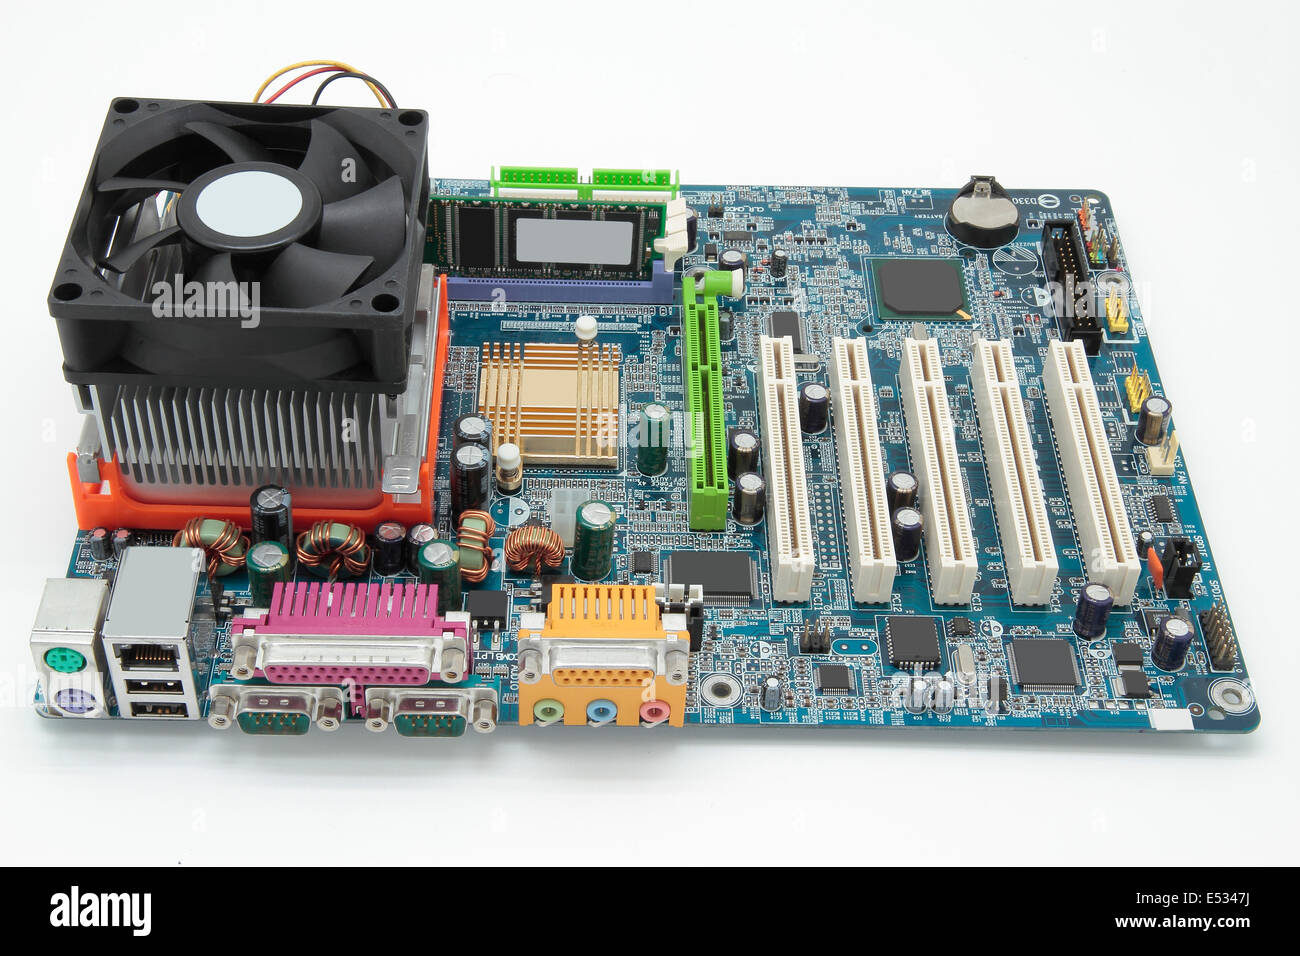 Imagen de una motherboard sobre fondo blanco. Foto de stock